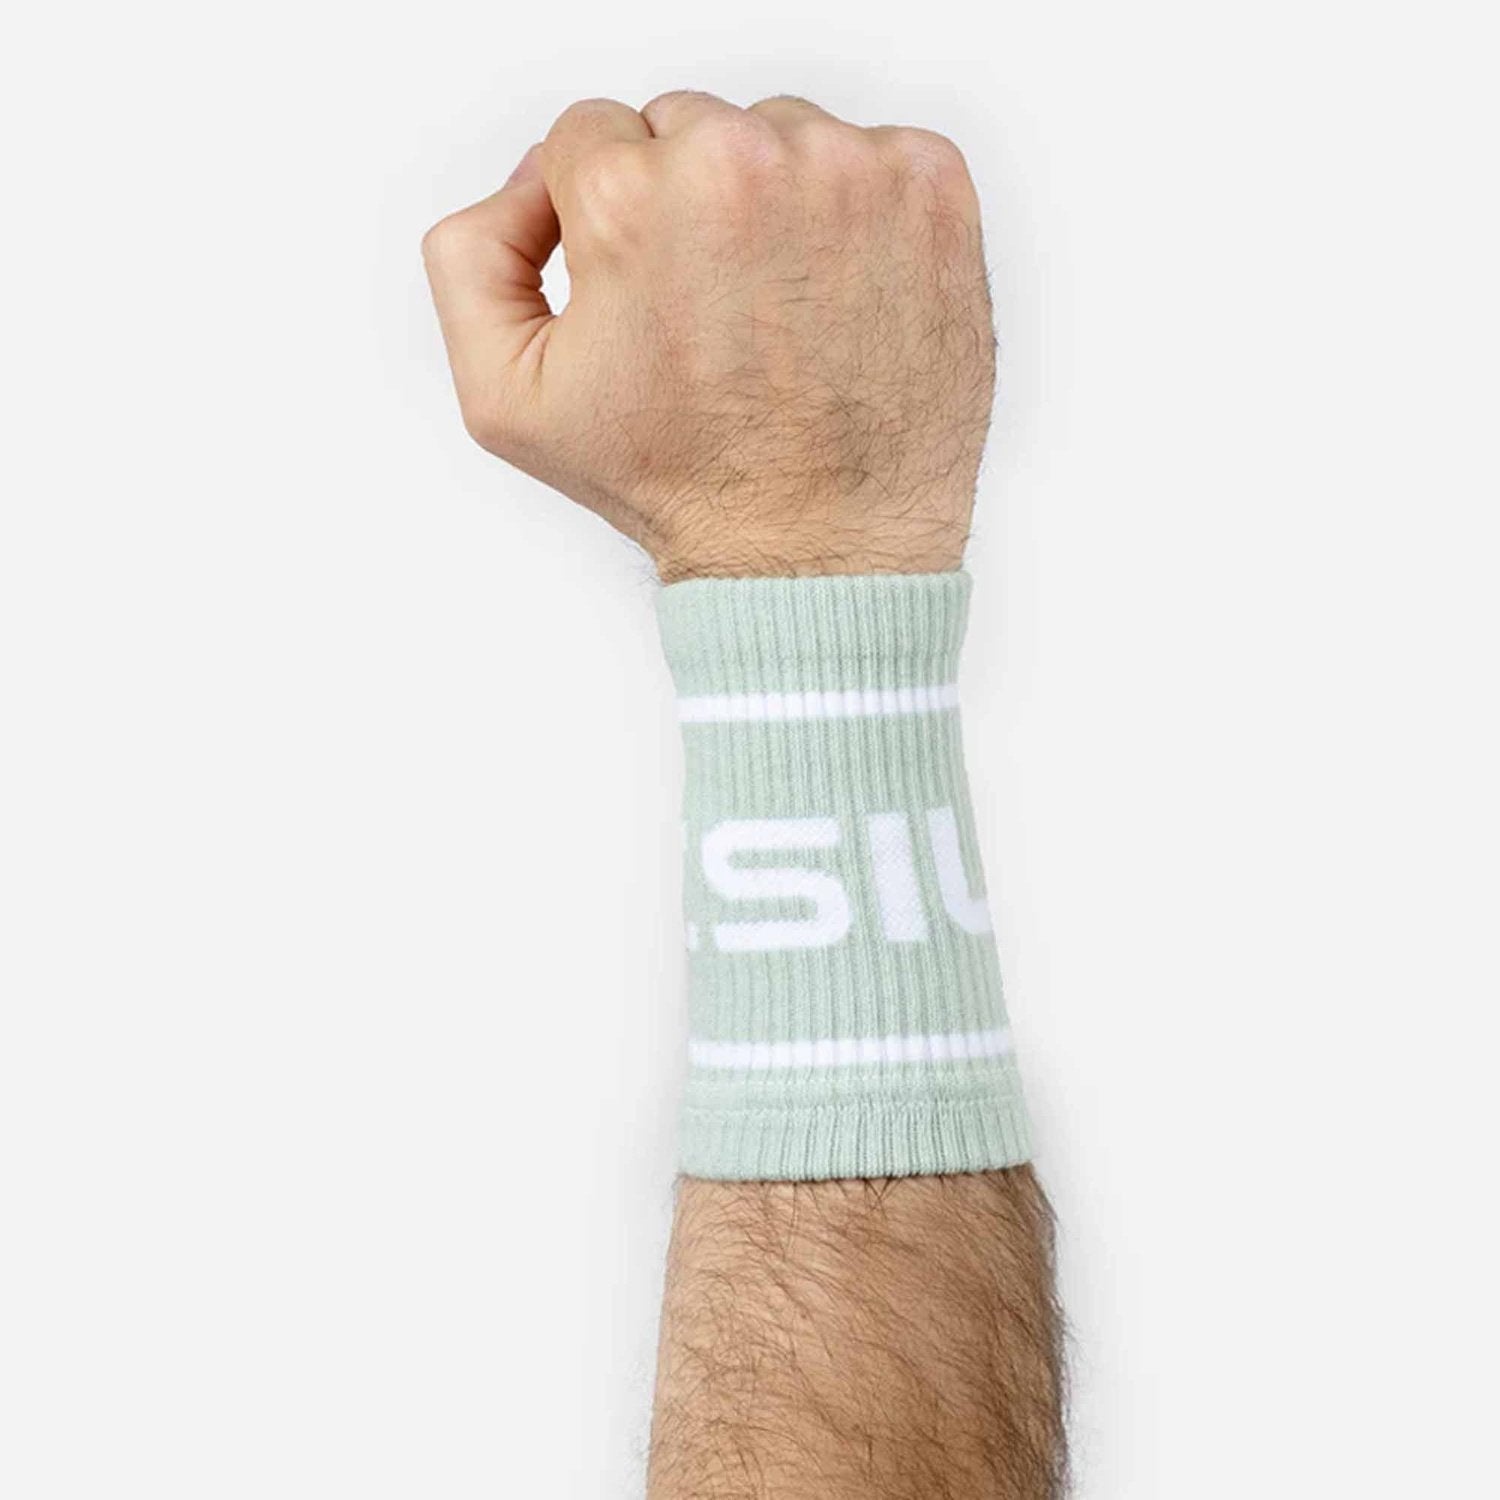 PicSil Wrist Bands (Schweissbänder) Grün kaufen bei HighPowered.ch